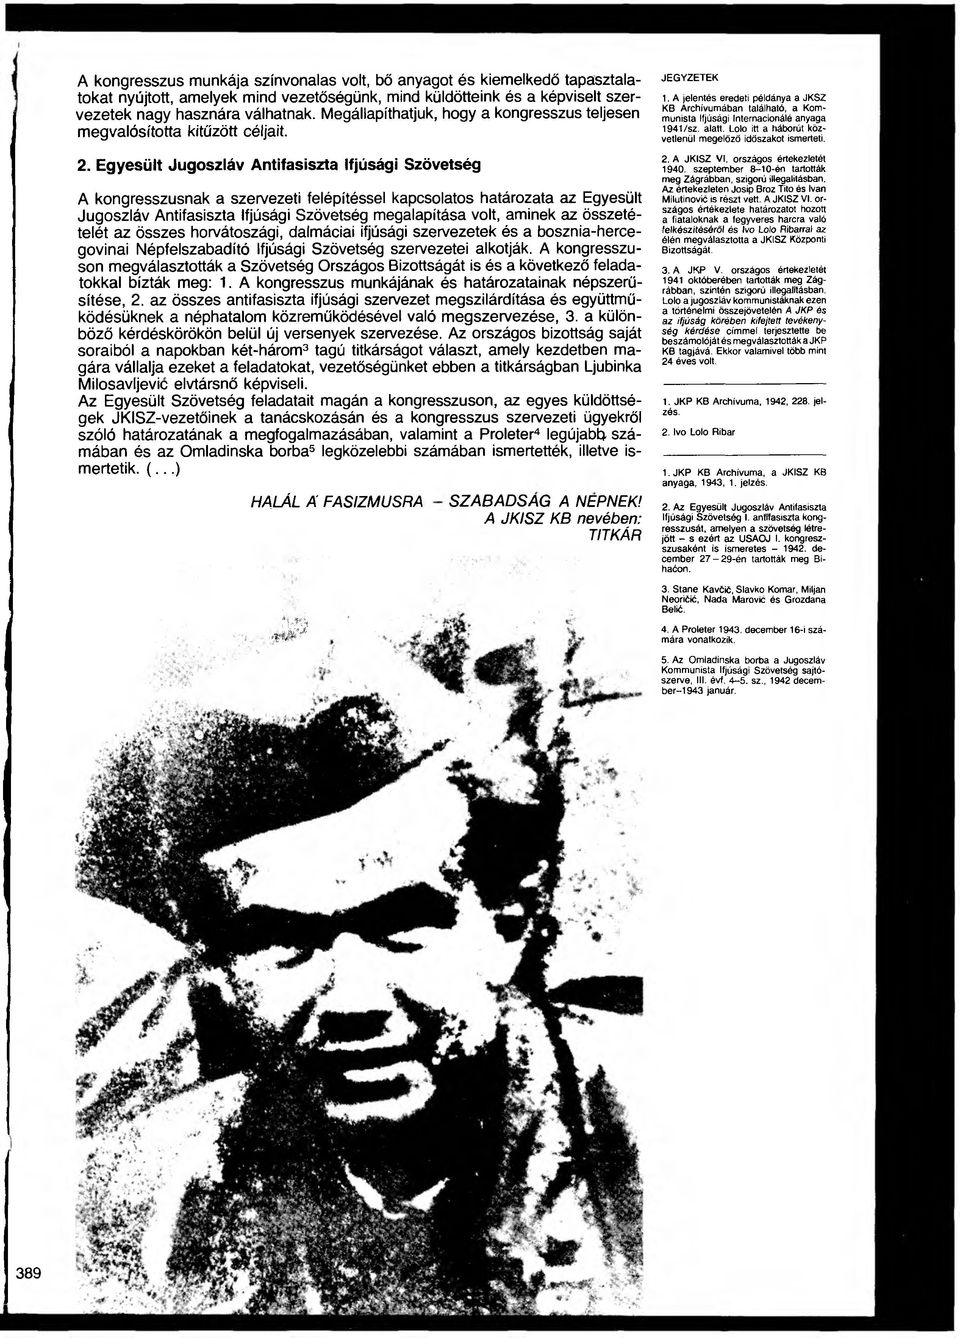 Egyesült Jugoszláv Antifasiszta Ifjúsági Szövetség A kongresszusnak a szervezeti felépítéssel kapcsolatos határozata az Egyesült Jugoszláv Antifasiszta Ifjúsági Szövetség megalapítása volt, aminek az